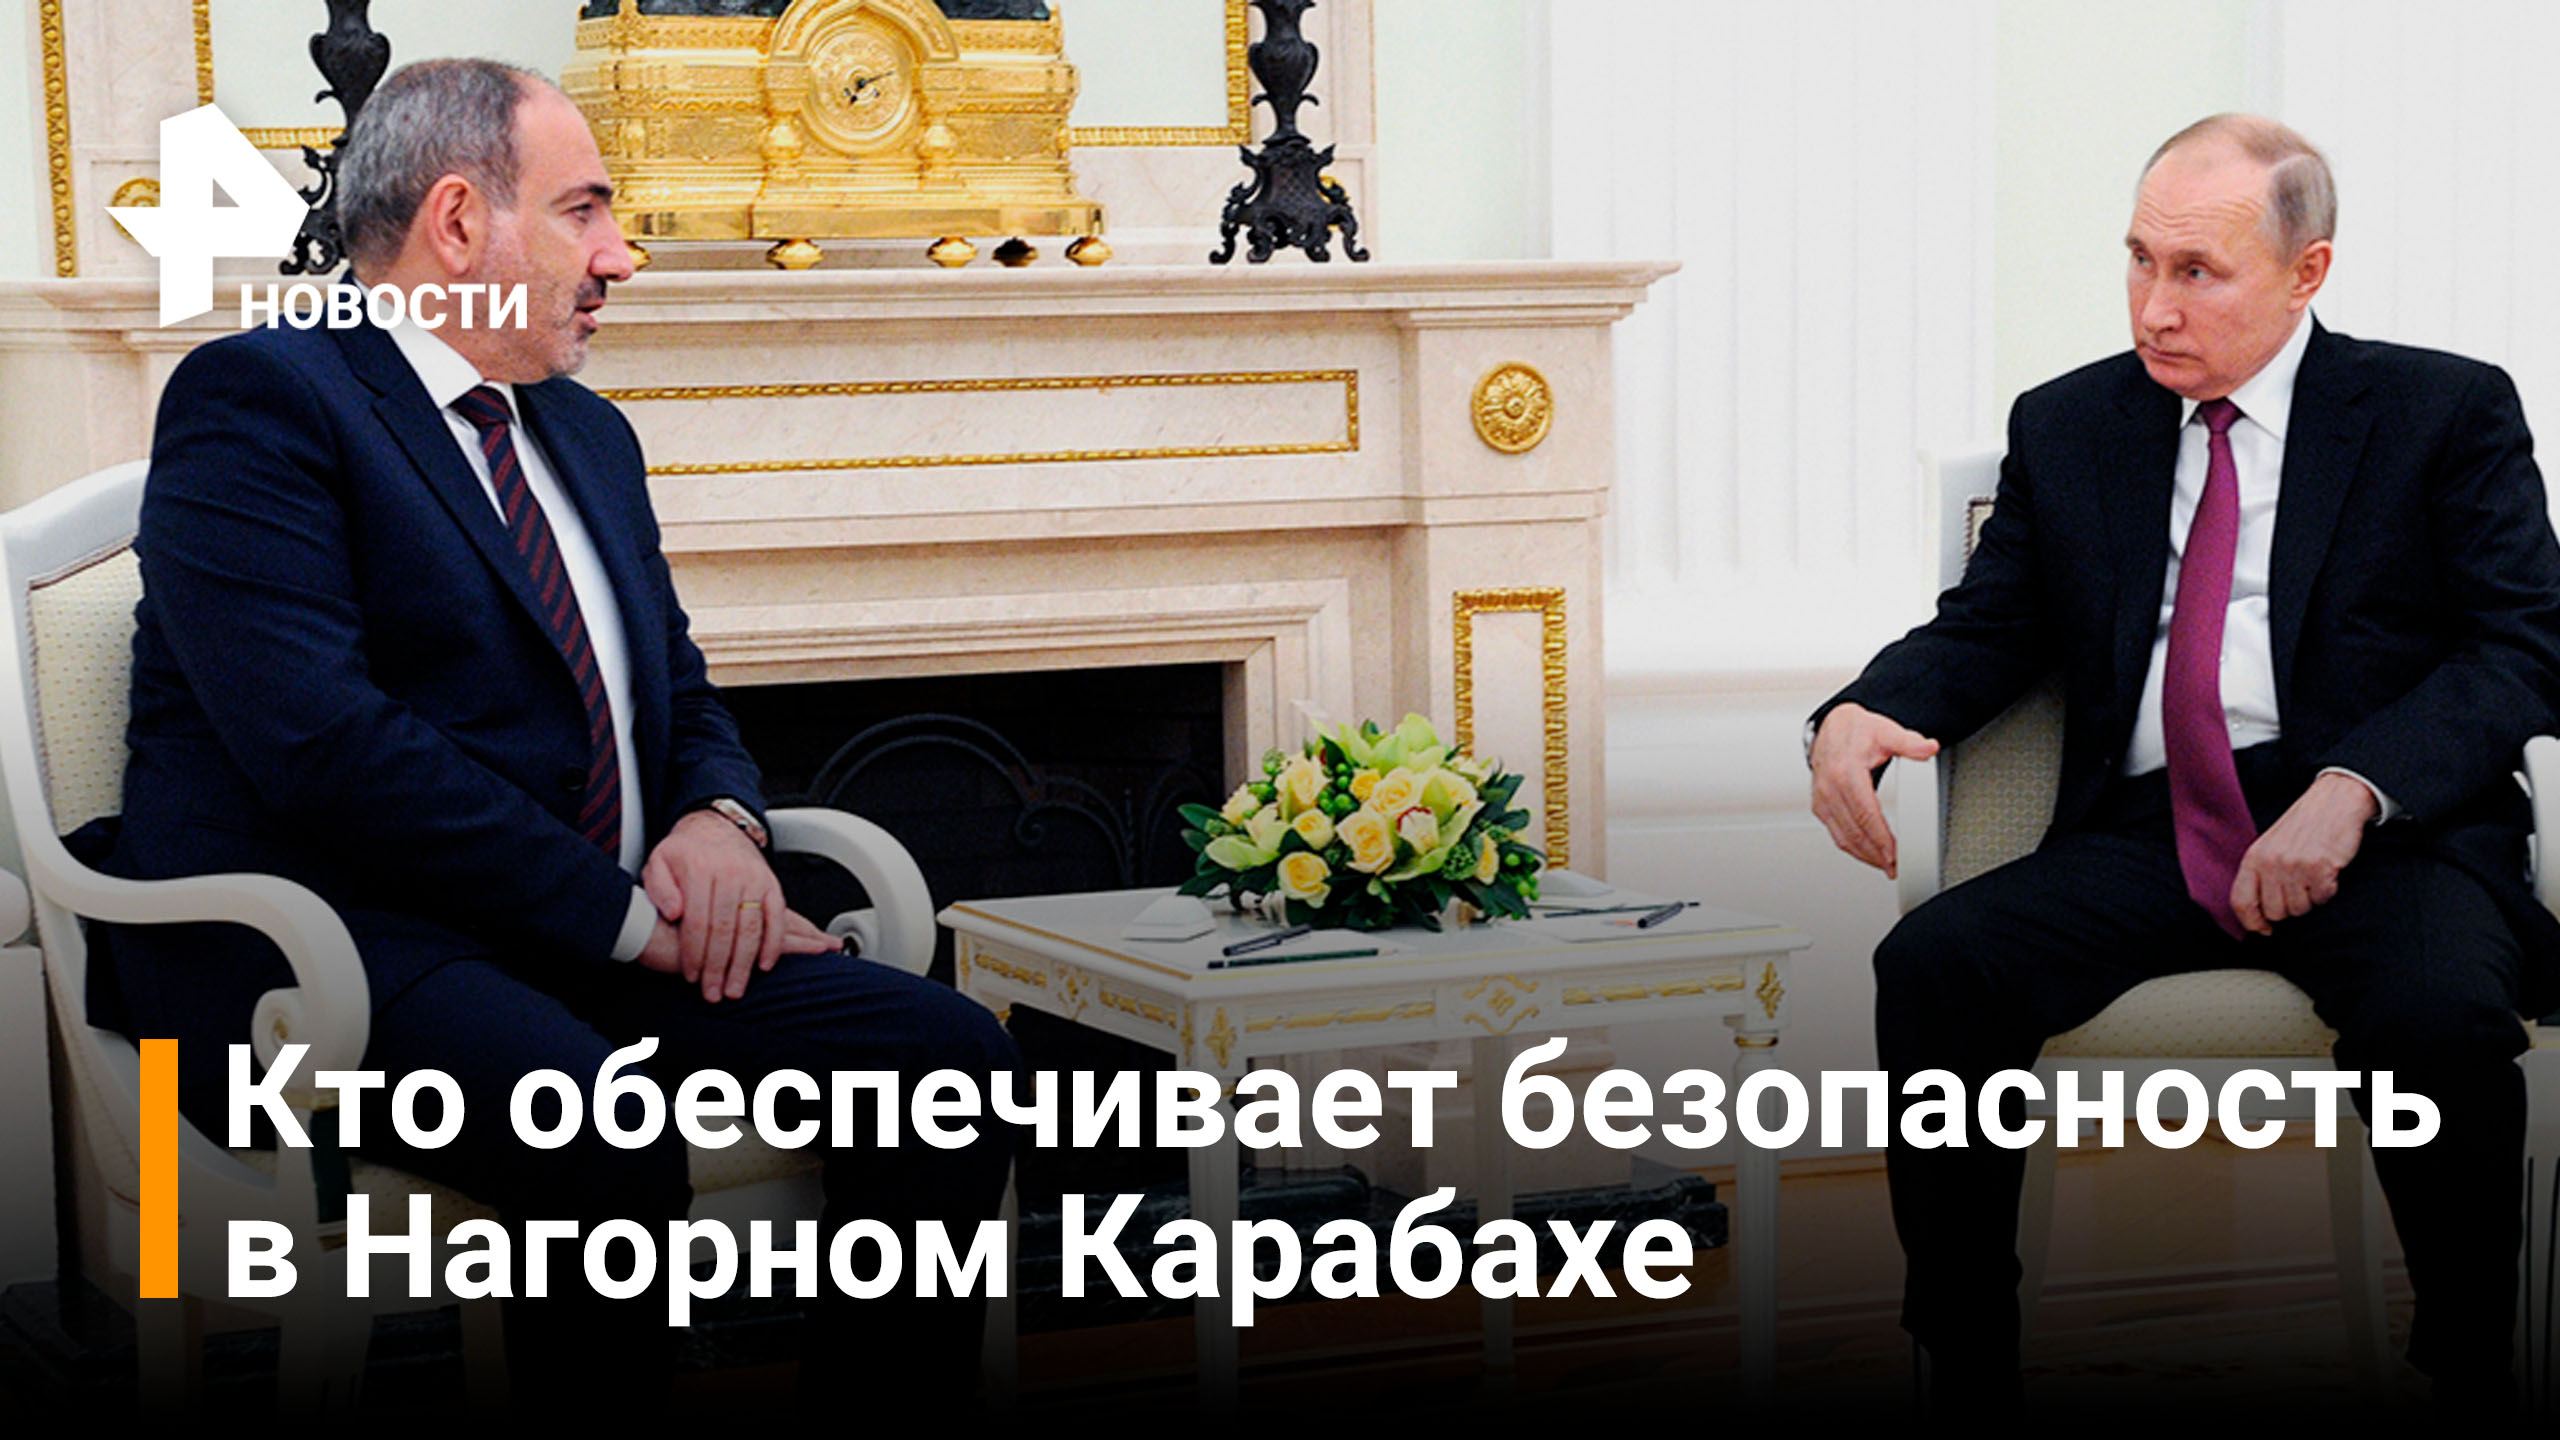 Пашинян: отношения между Москвой и Ереваном на очень высоком уровне / РЕН Новости